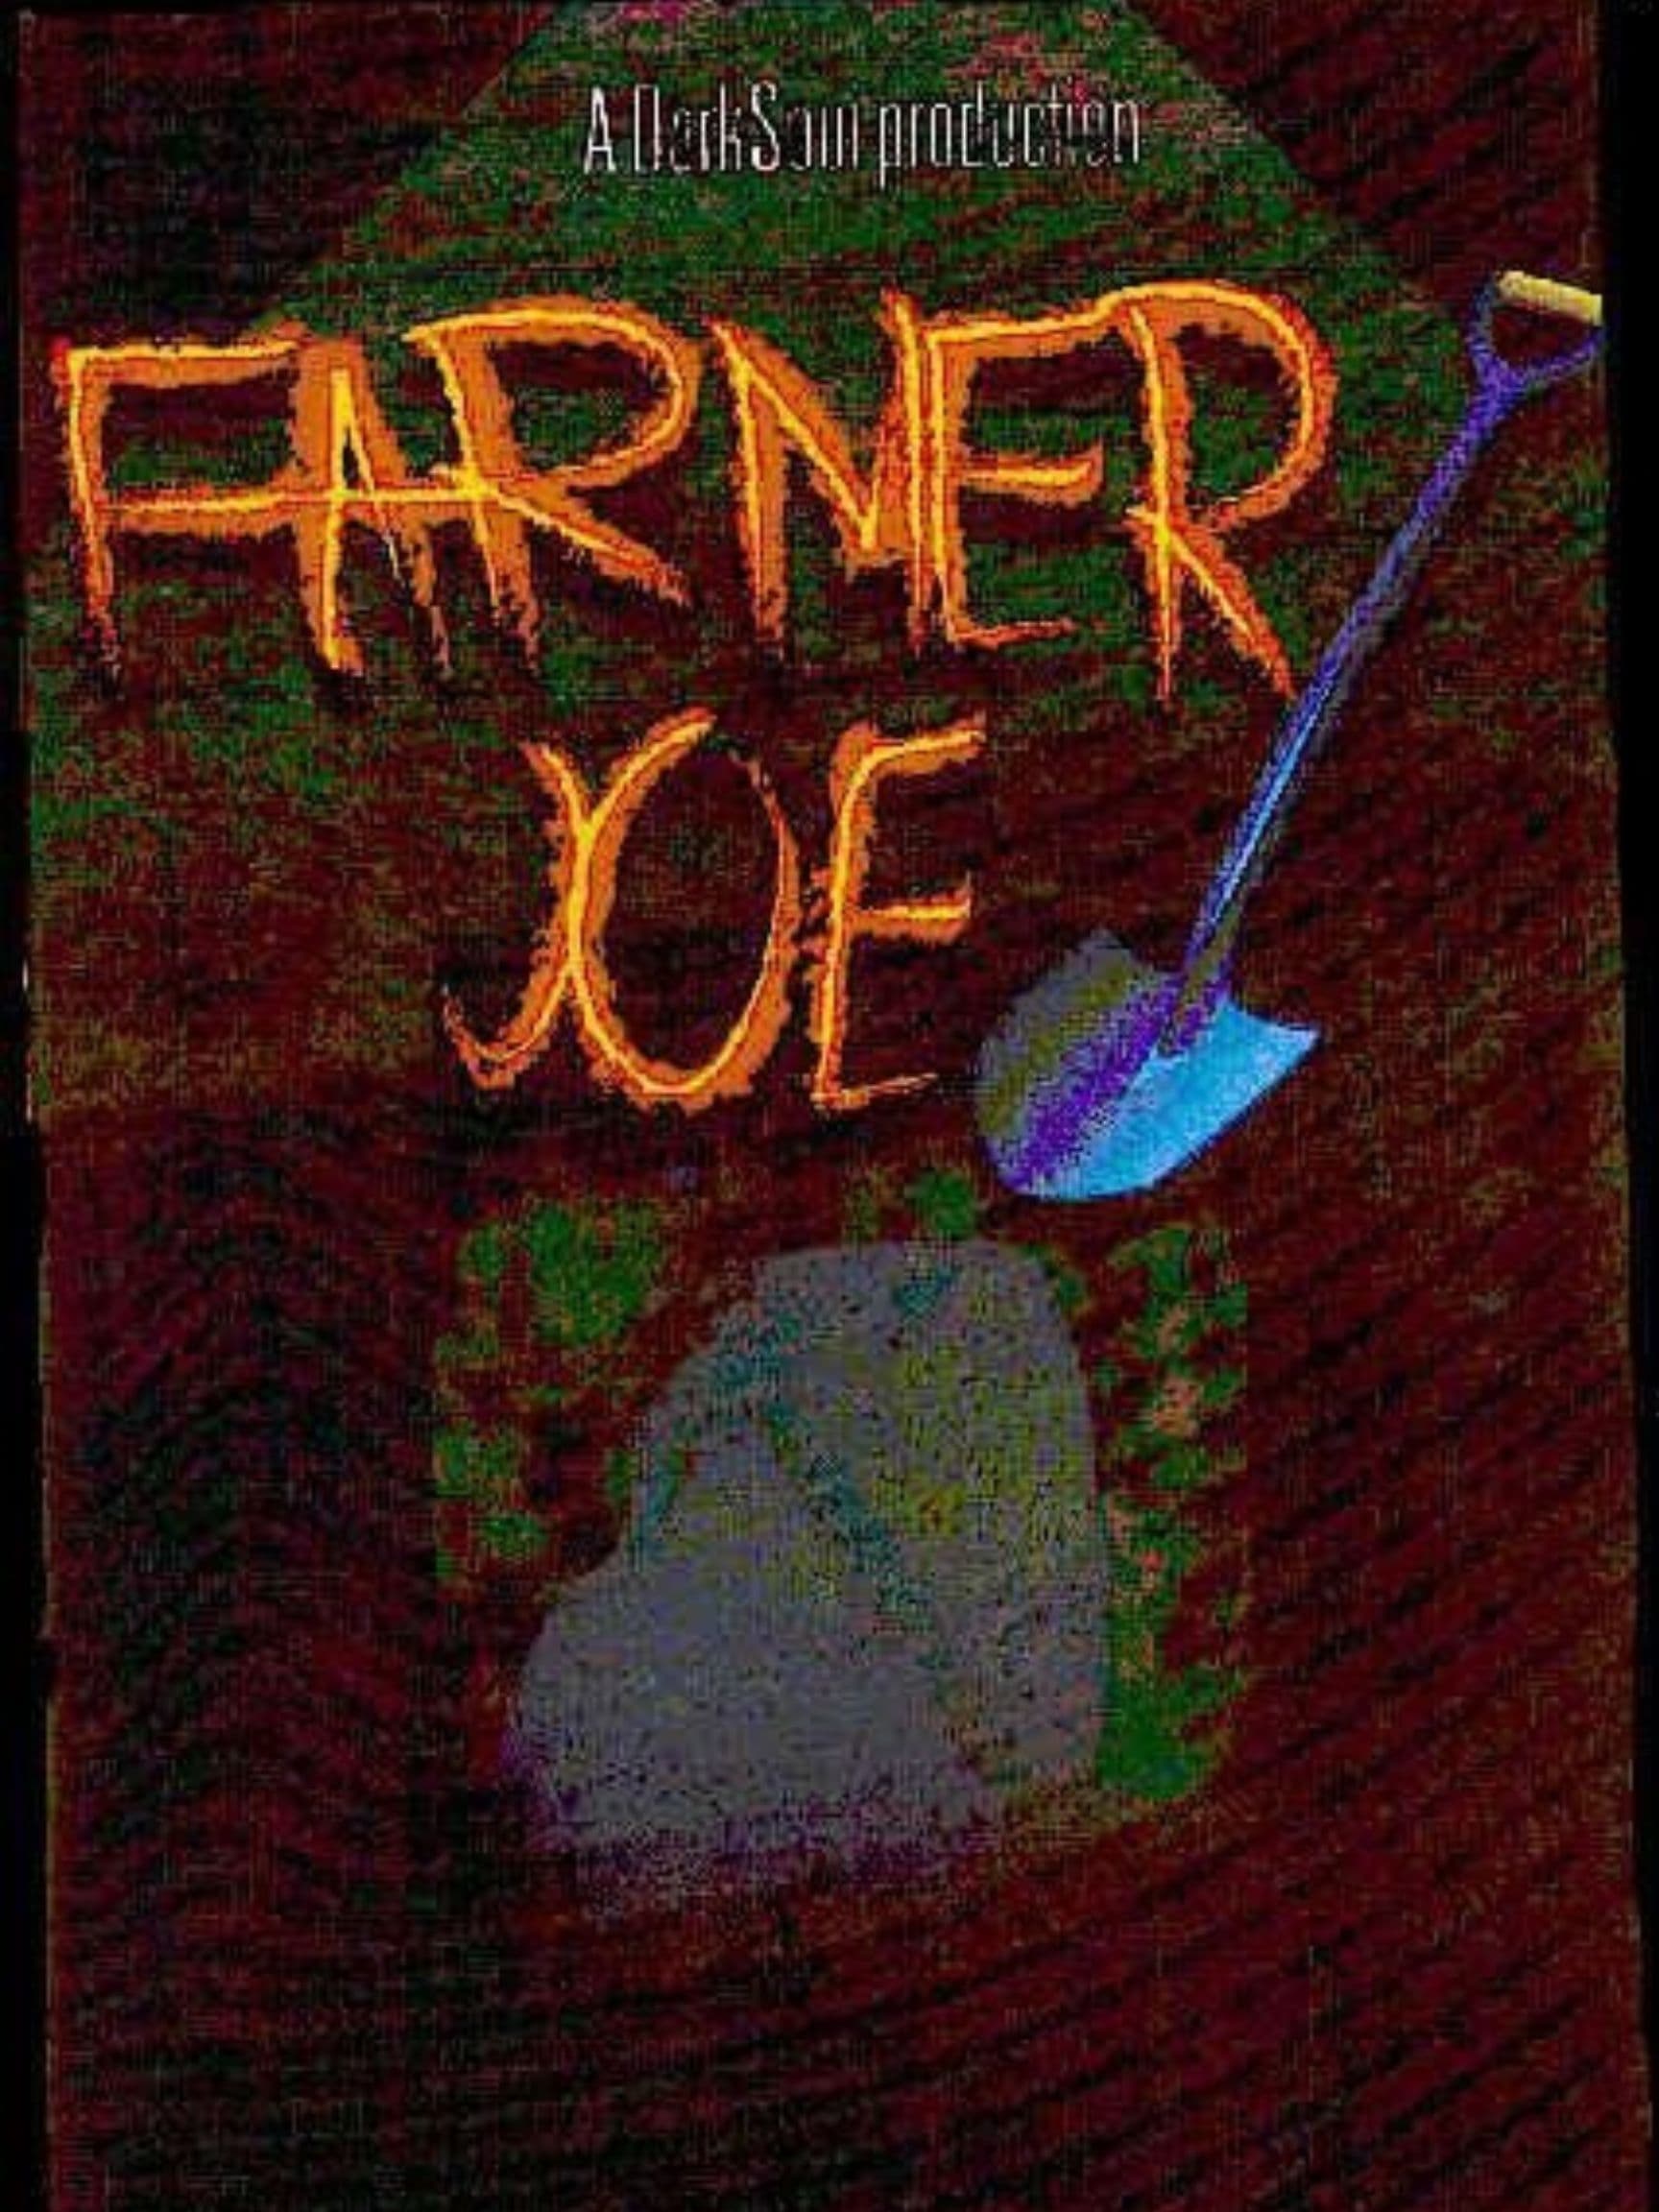 Farmer Joe